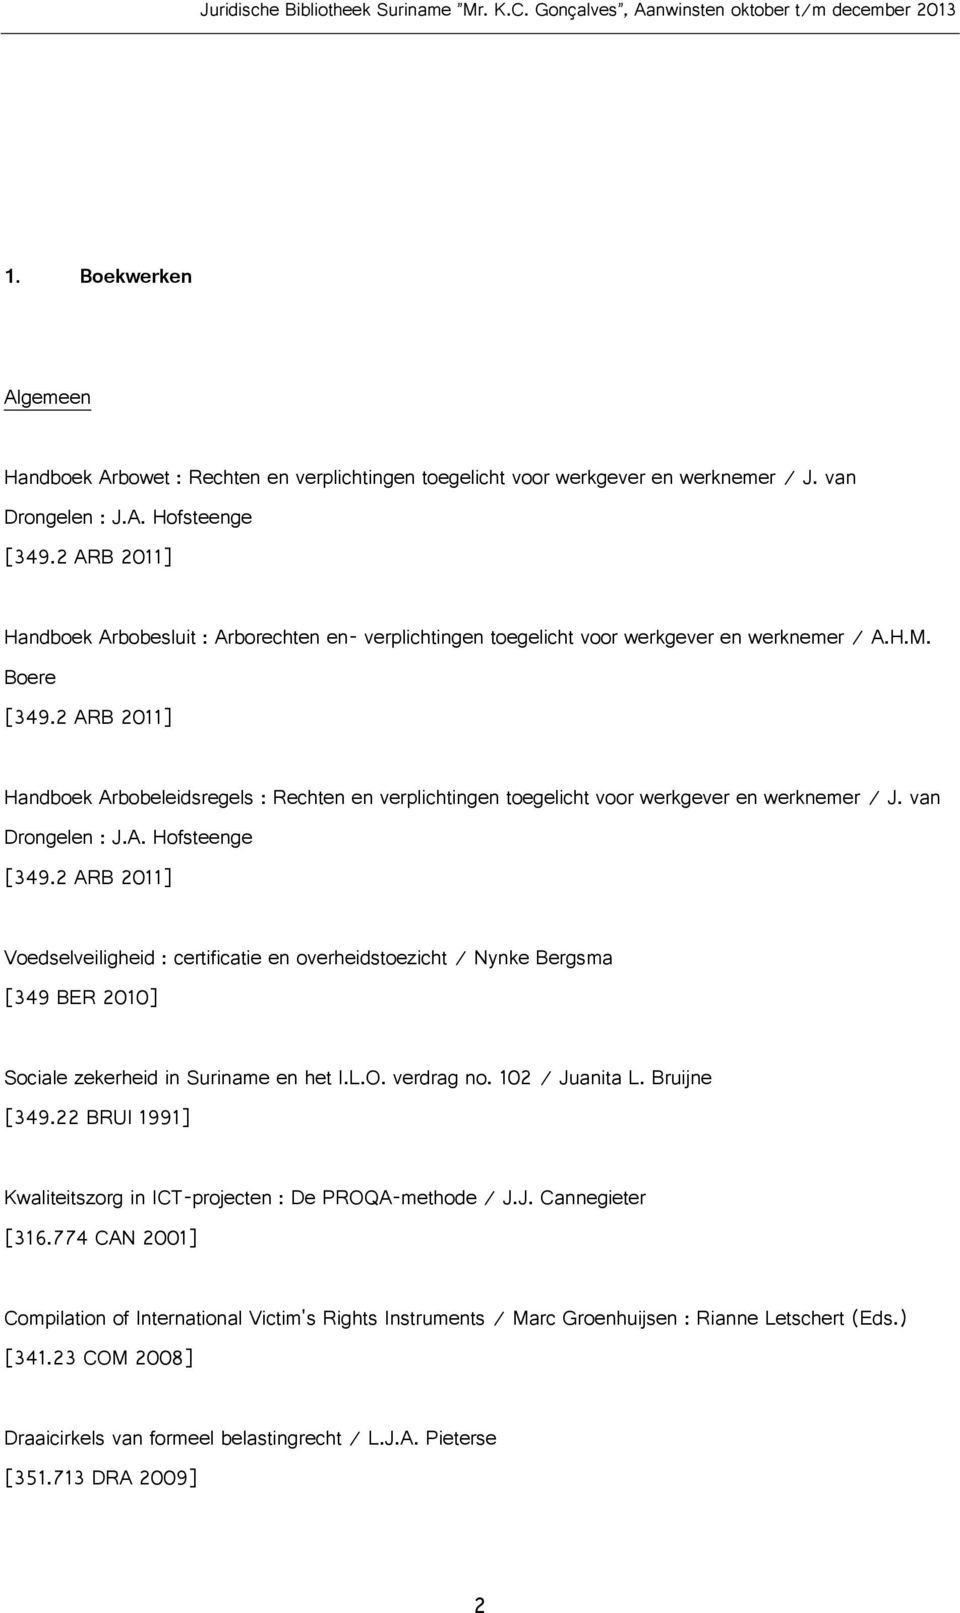 2 ARB 2011] Handboek Arbobeleidsregels : Rechten en verplichtingen toegelicht voor werkgever en werknemer / J. van Drongelen : J.A. Hofsteenge [349.